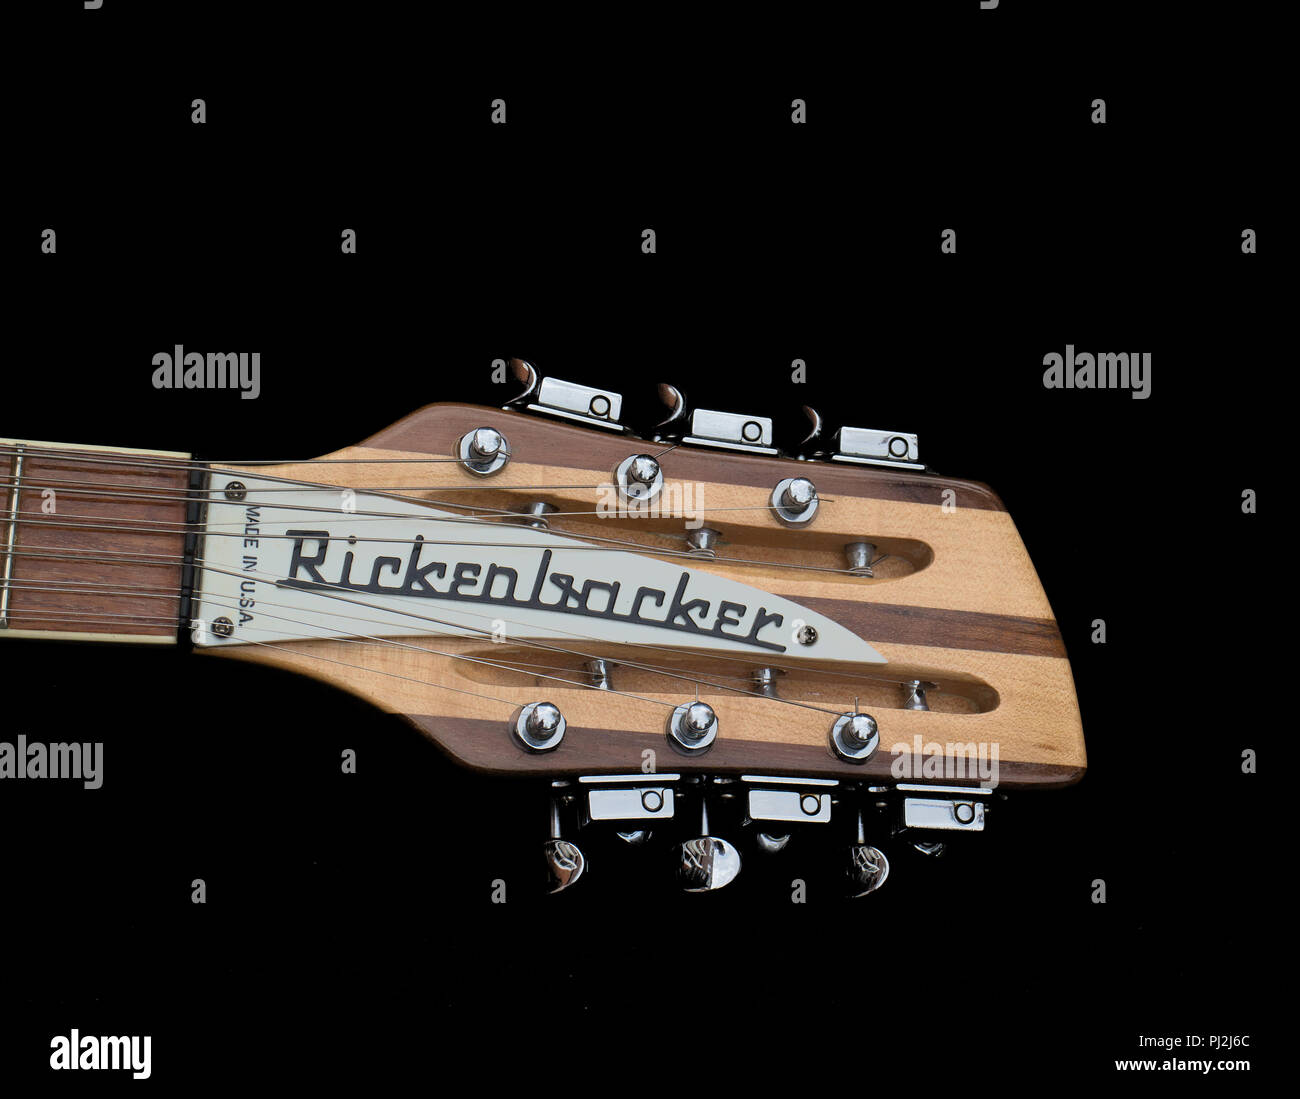 Poupée et pieux de la Rickenbacker 360-12 à 12 cordes. Bougies de couleur érable. USA.1985 Banque D'Images